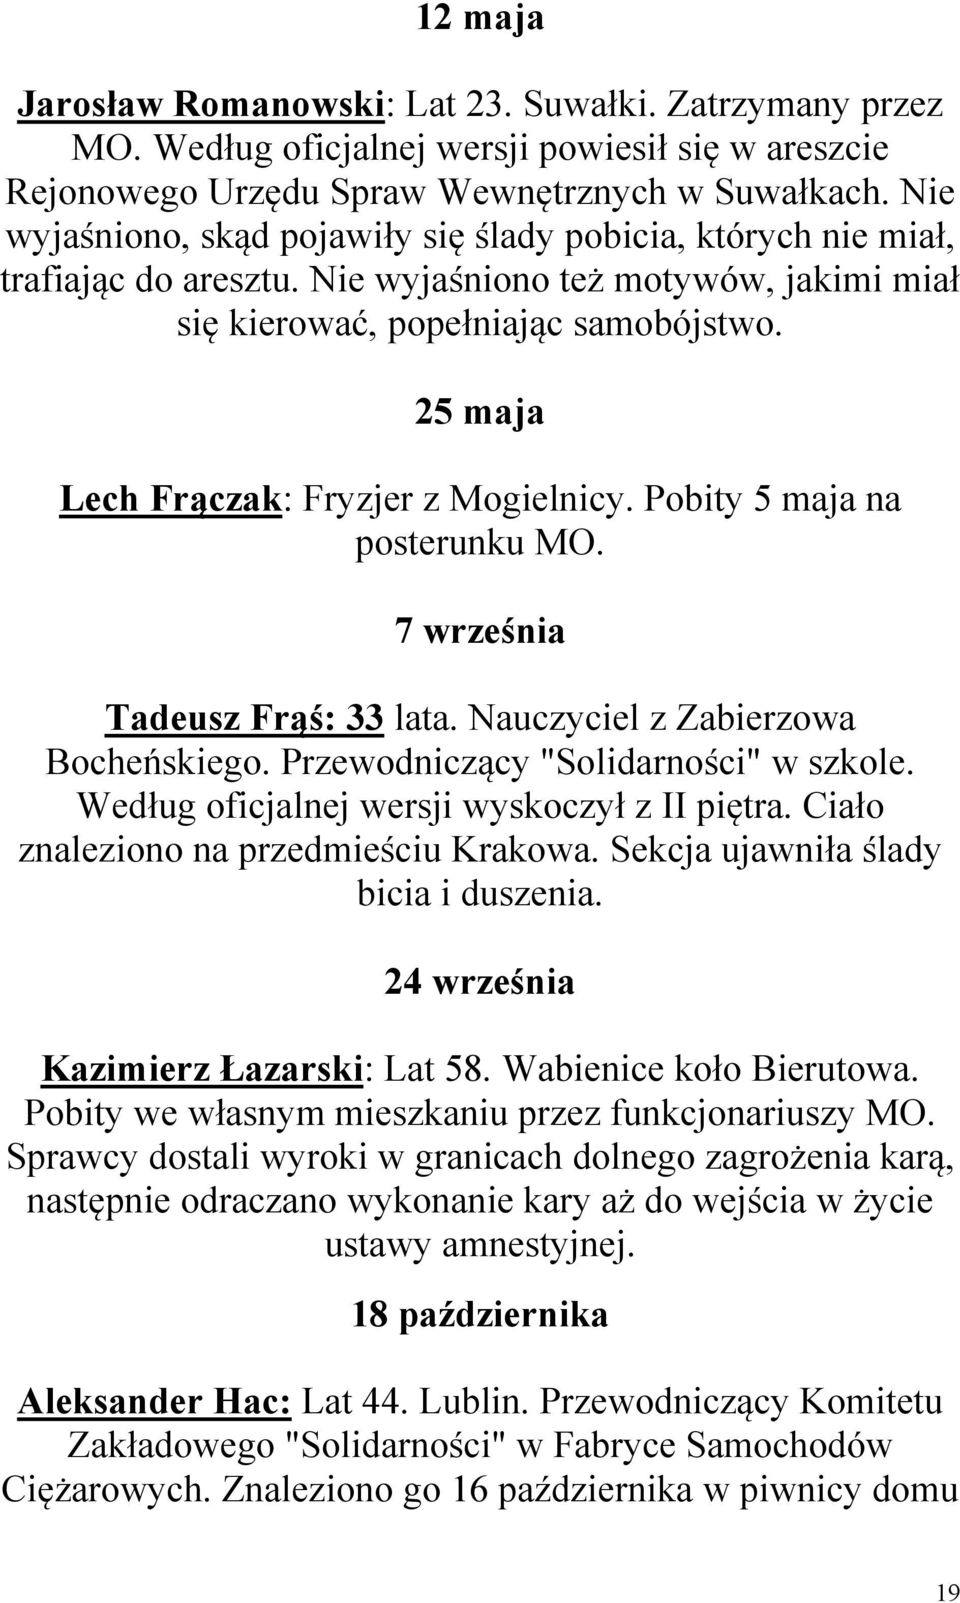 25 maja Lech Frączak: Fryzjer z Mogielnicy. Pobity 5 maja na posterunku MO. 7 września Tadeusz Frąś: 33 lata. Nauczyciel z Zabierzowa Bocheńskiego. Przewodniczący "Solidarności" w szkole.